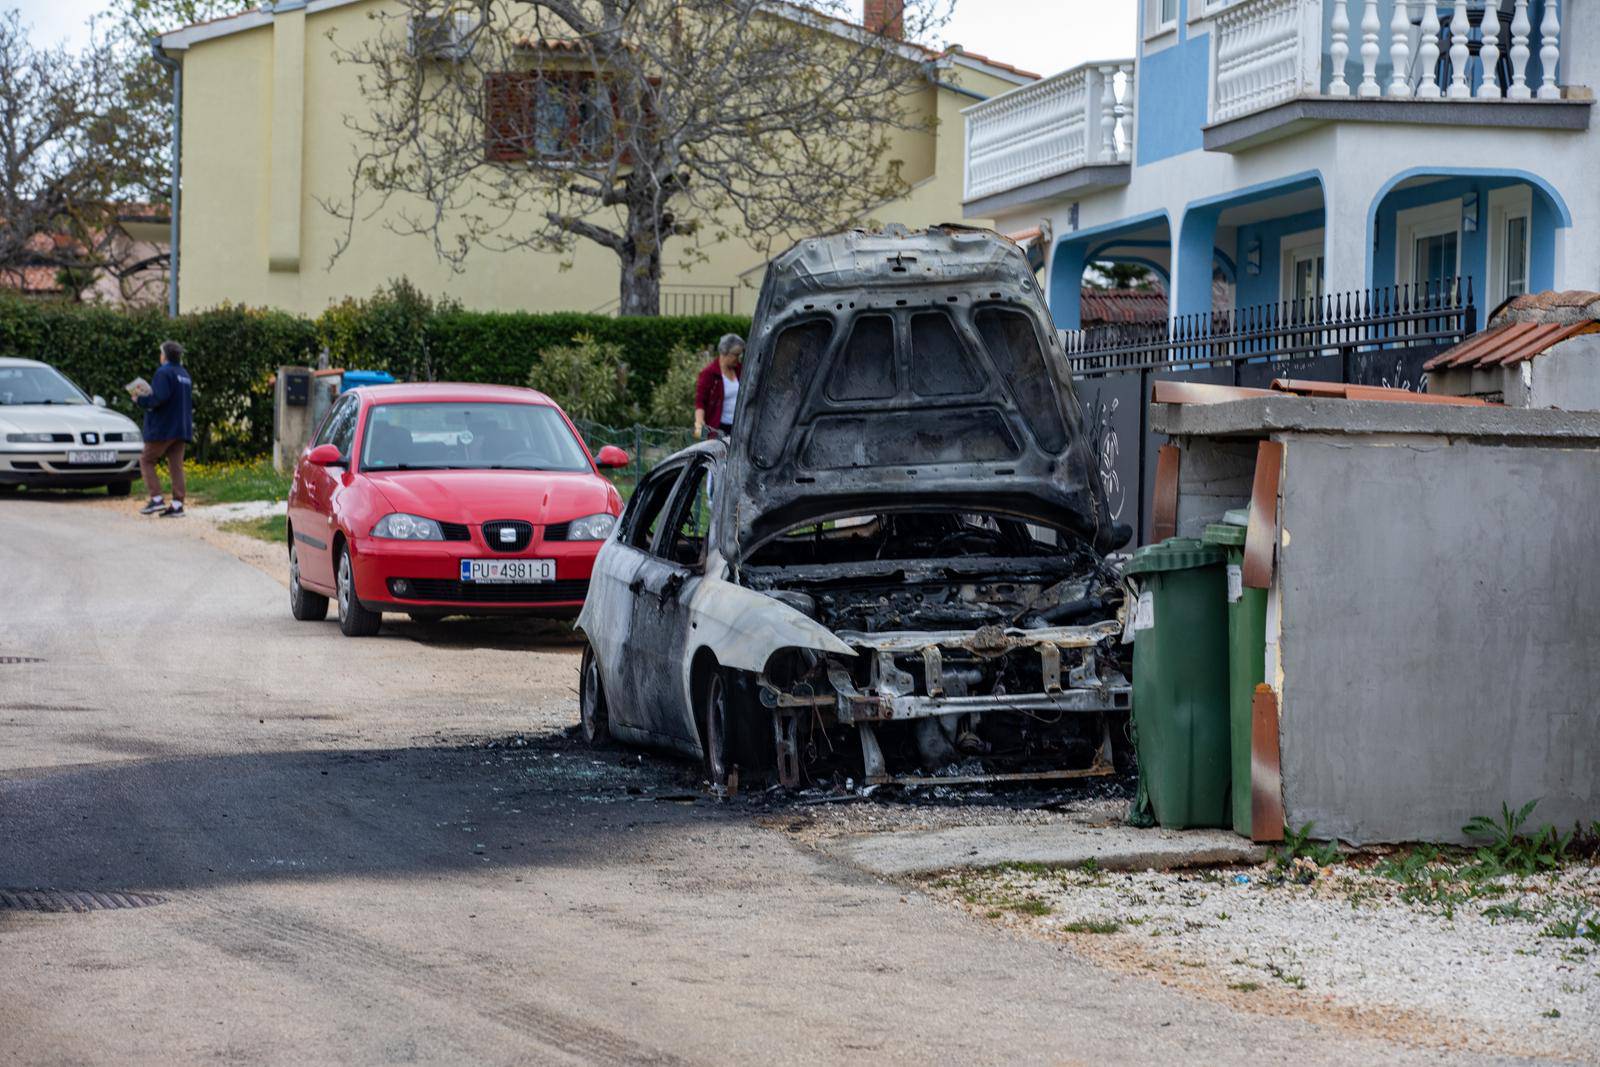 U tri sata ujutro u naselju Žbandaj kod Poreča buknuo je požar na dva automobila